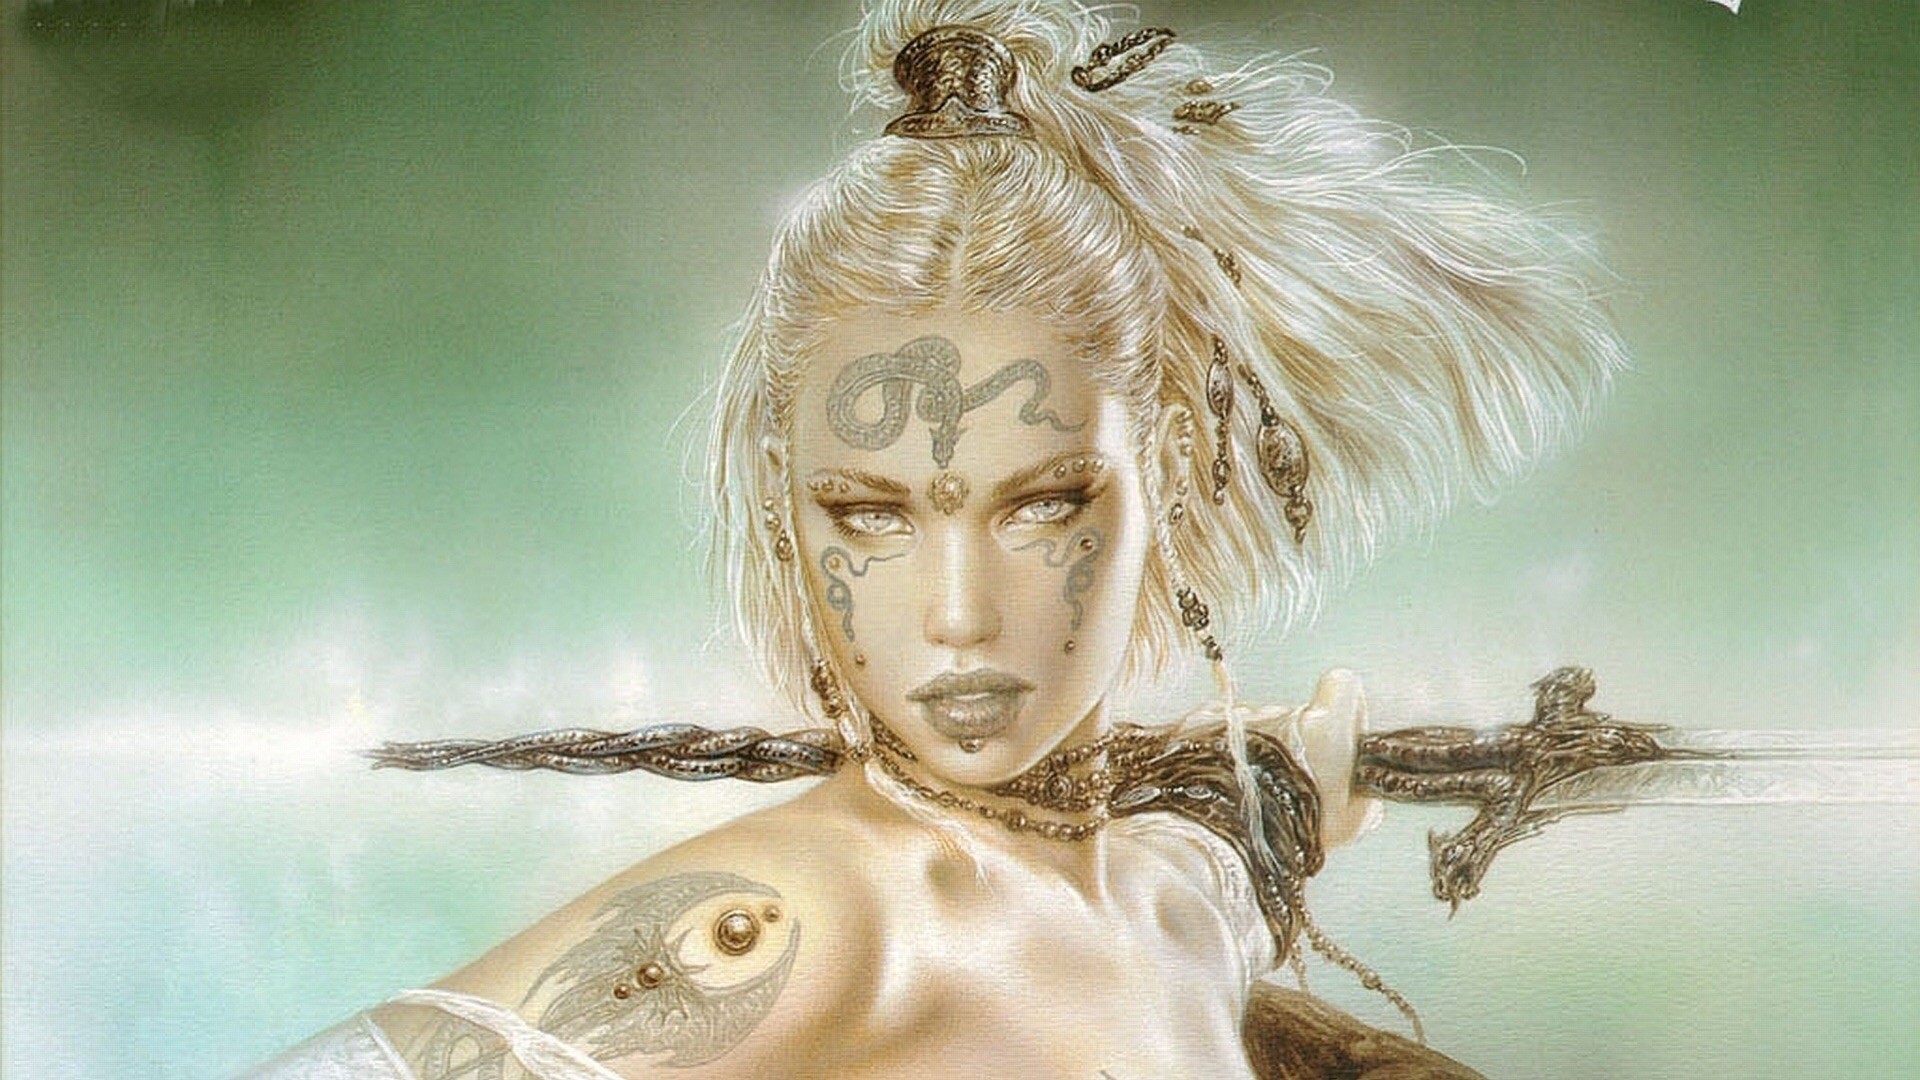 General 1920x1080 fantasy art fantasy girl blonde women face Luis Royo makeup inked girls face paint